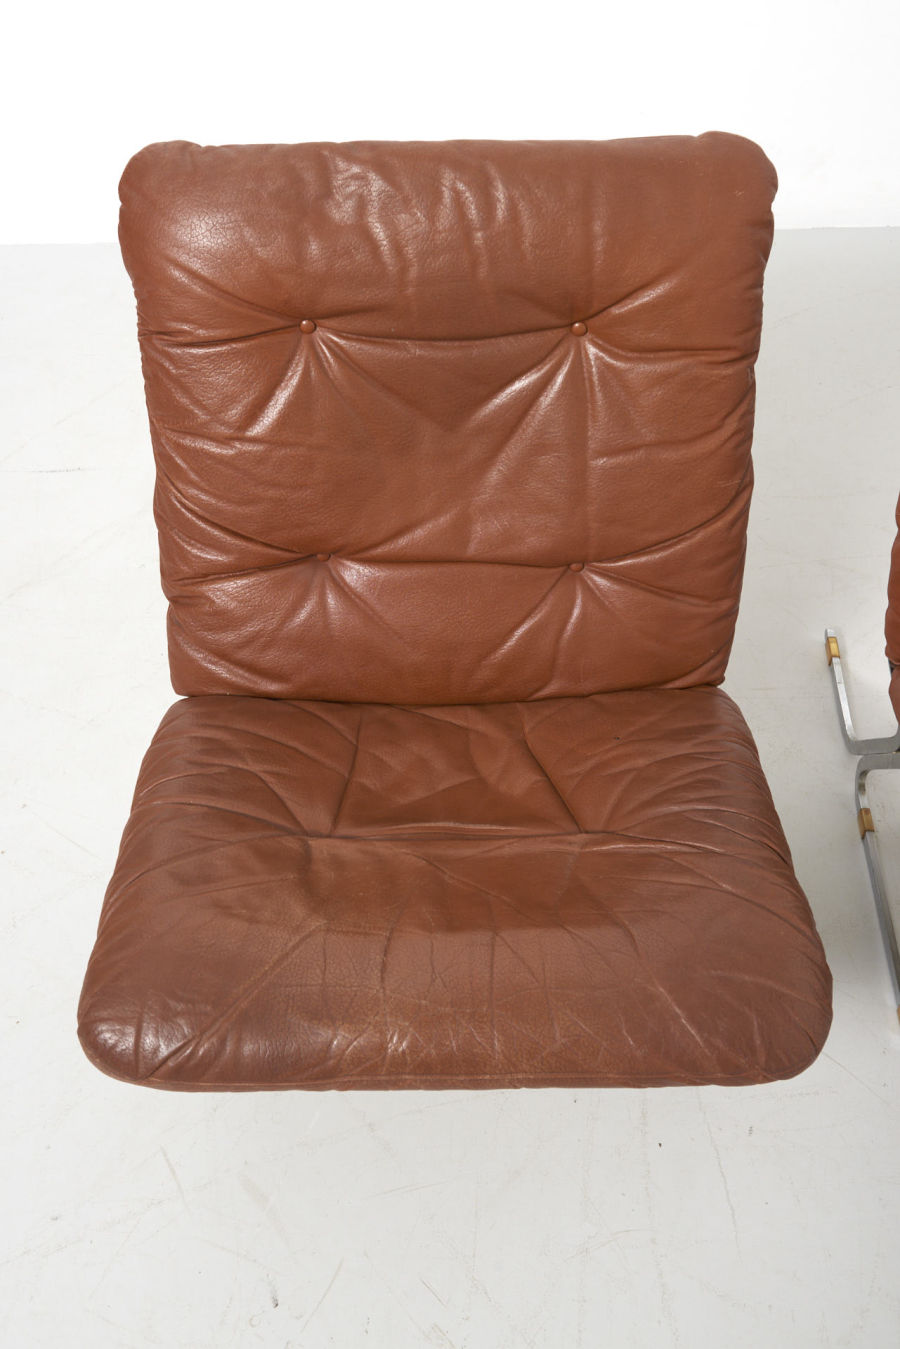 modestfurniture-vintage-2610-pair-easy-chair-flat-steel-brown-leather05